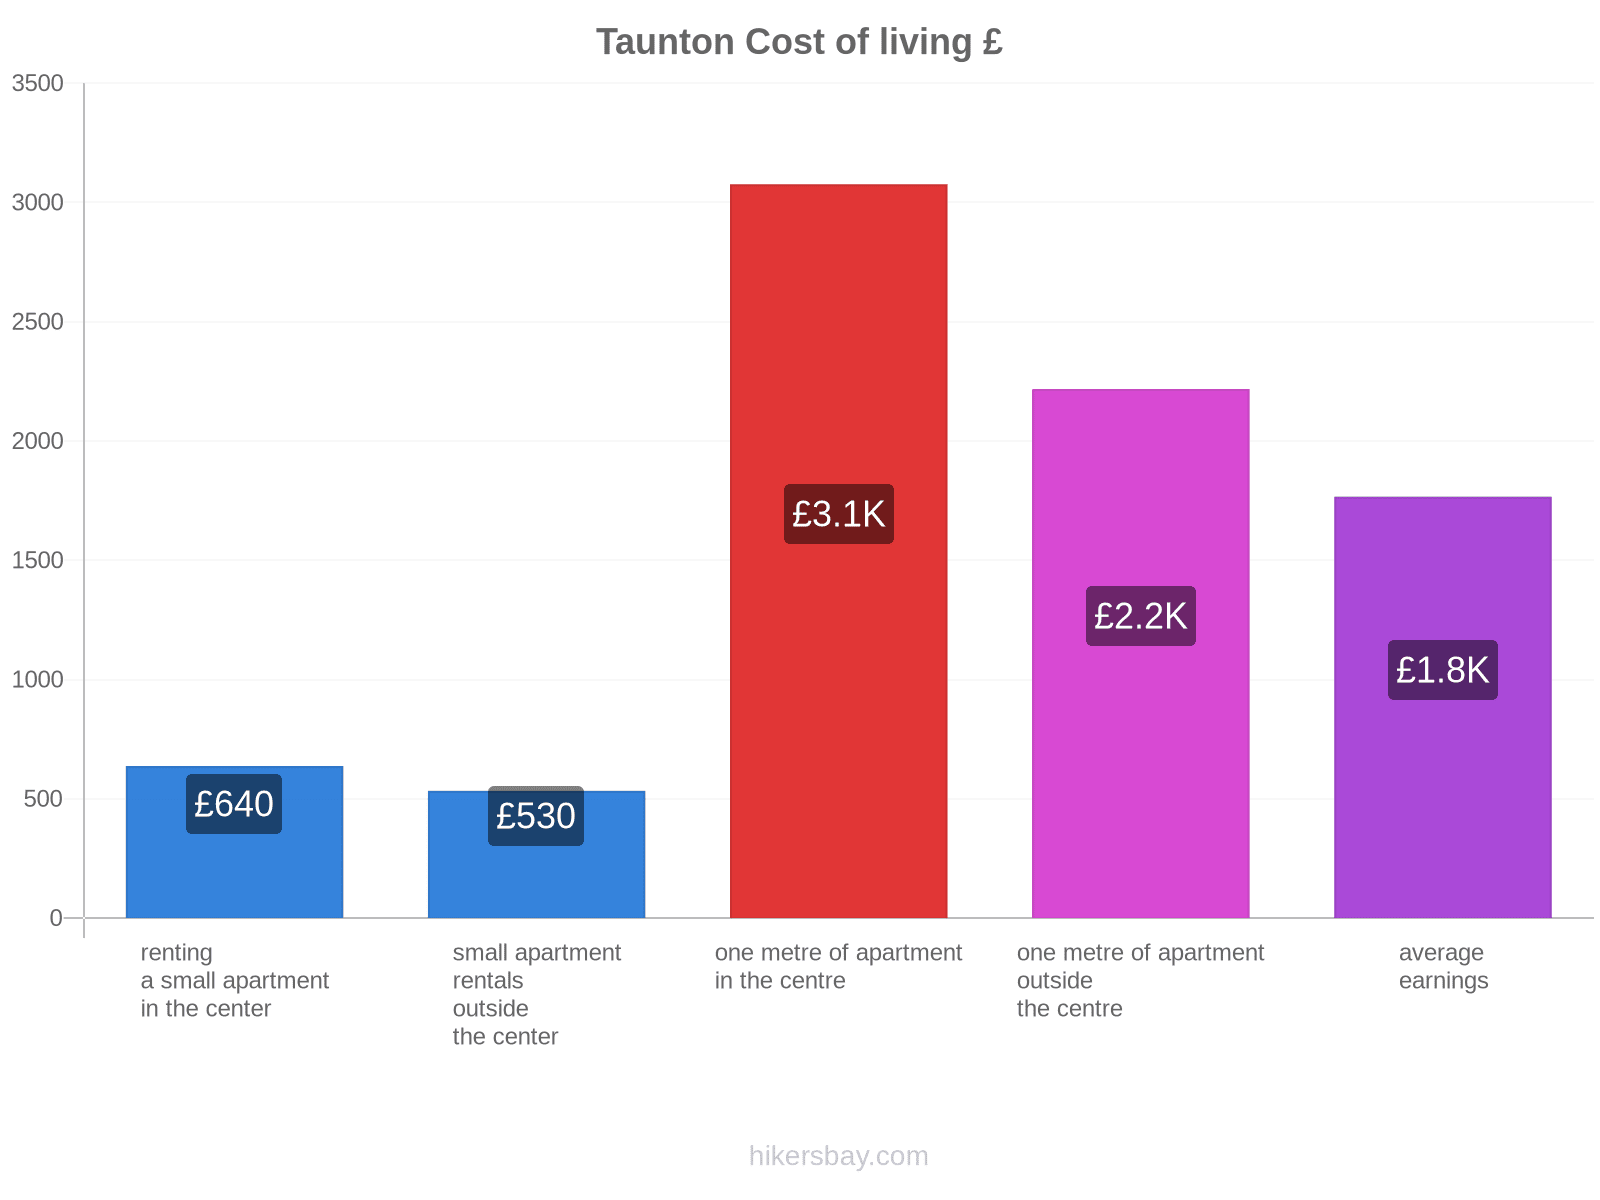 Taunton cost of living hikersbay.com